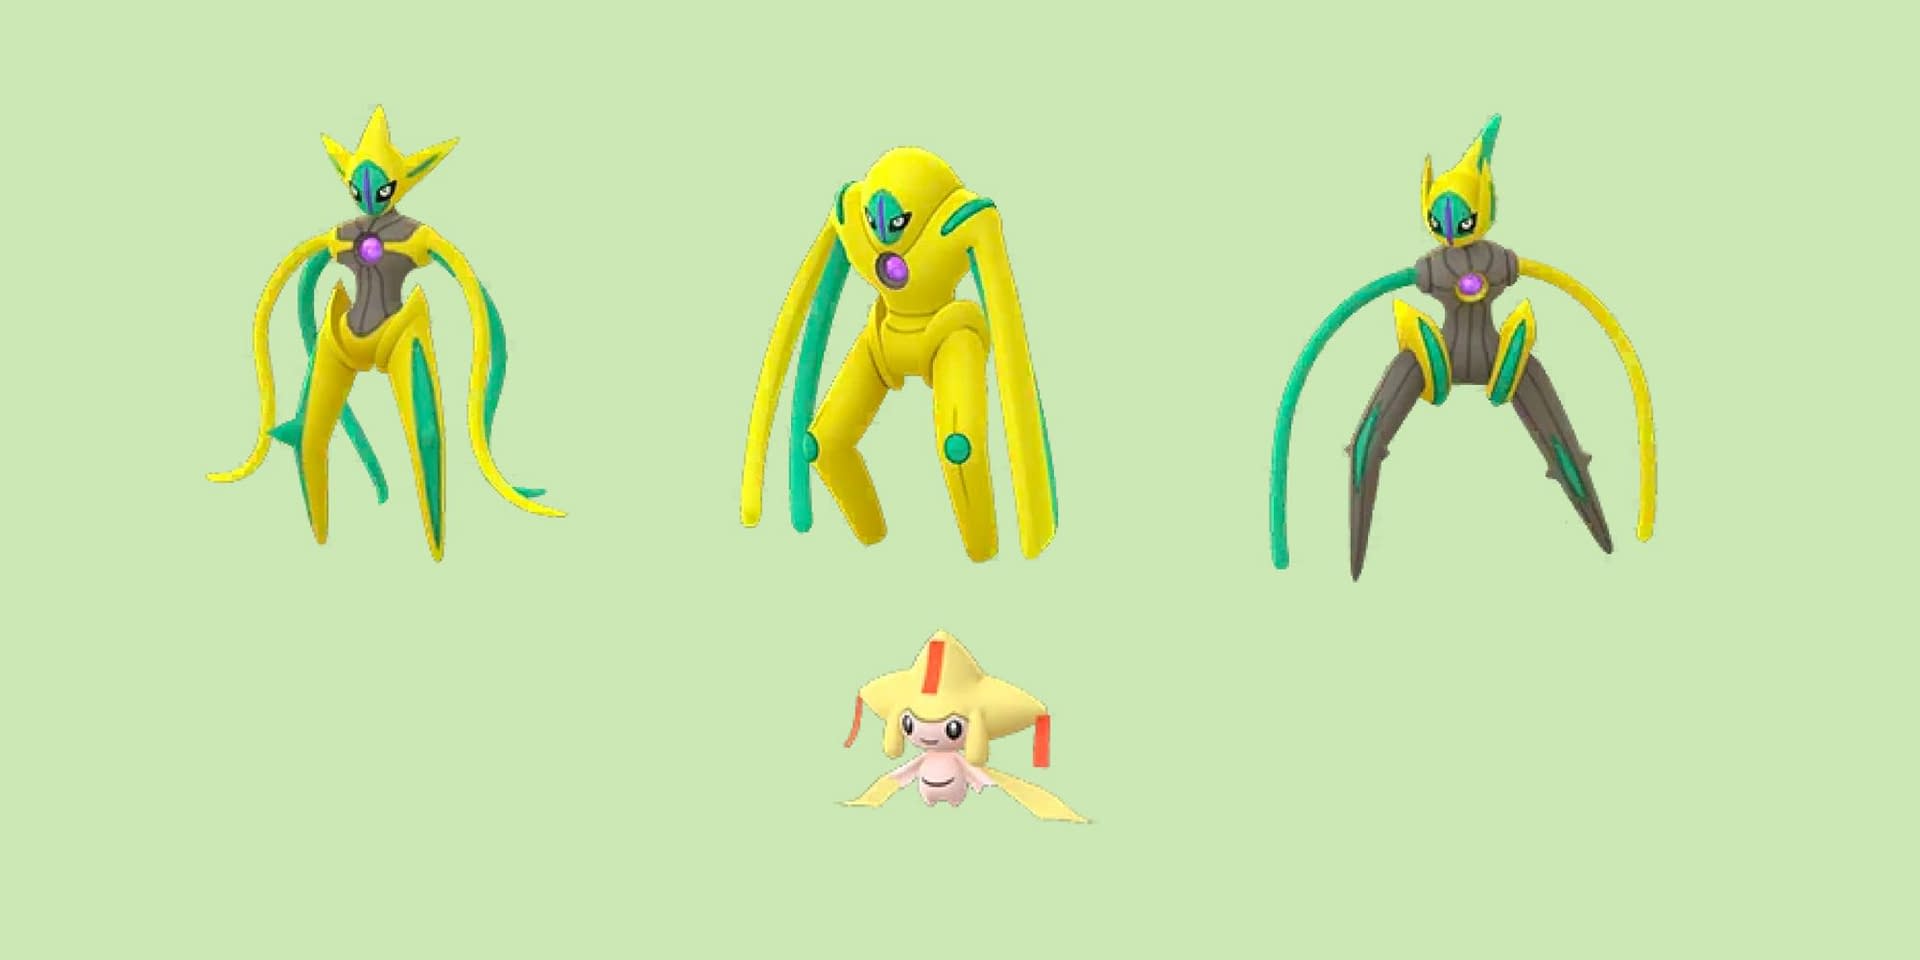 New Pokémon Go shinies revealed in datamine - Polygon